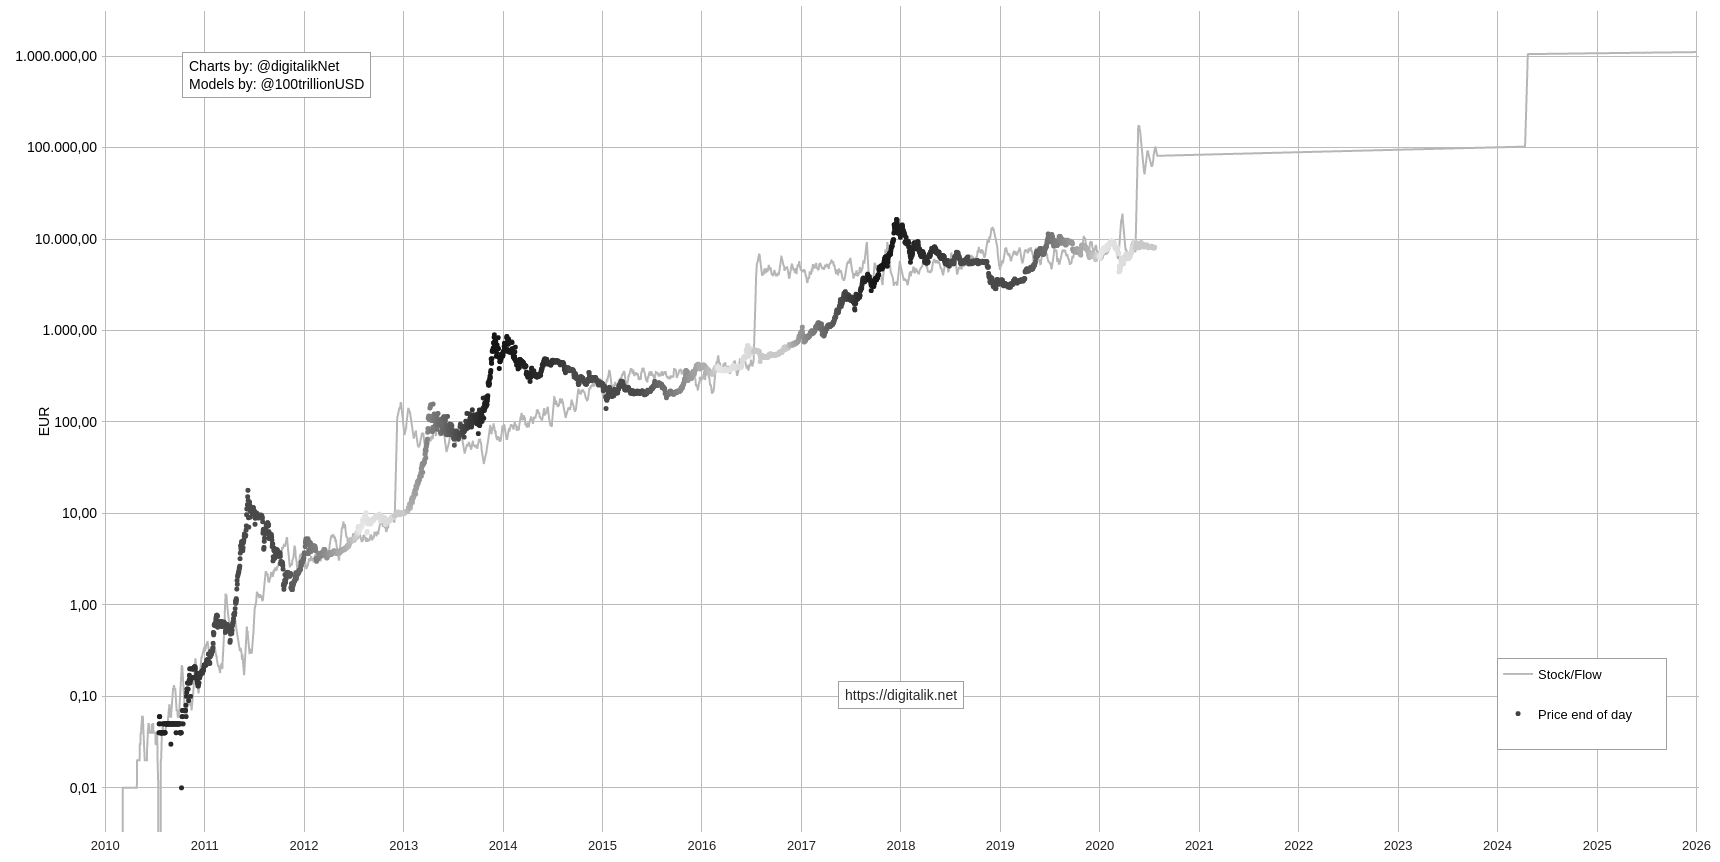 bitcoinkoers 2010 tot 2026 met stock-to-flow